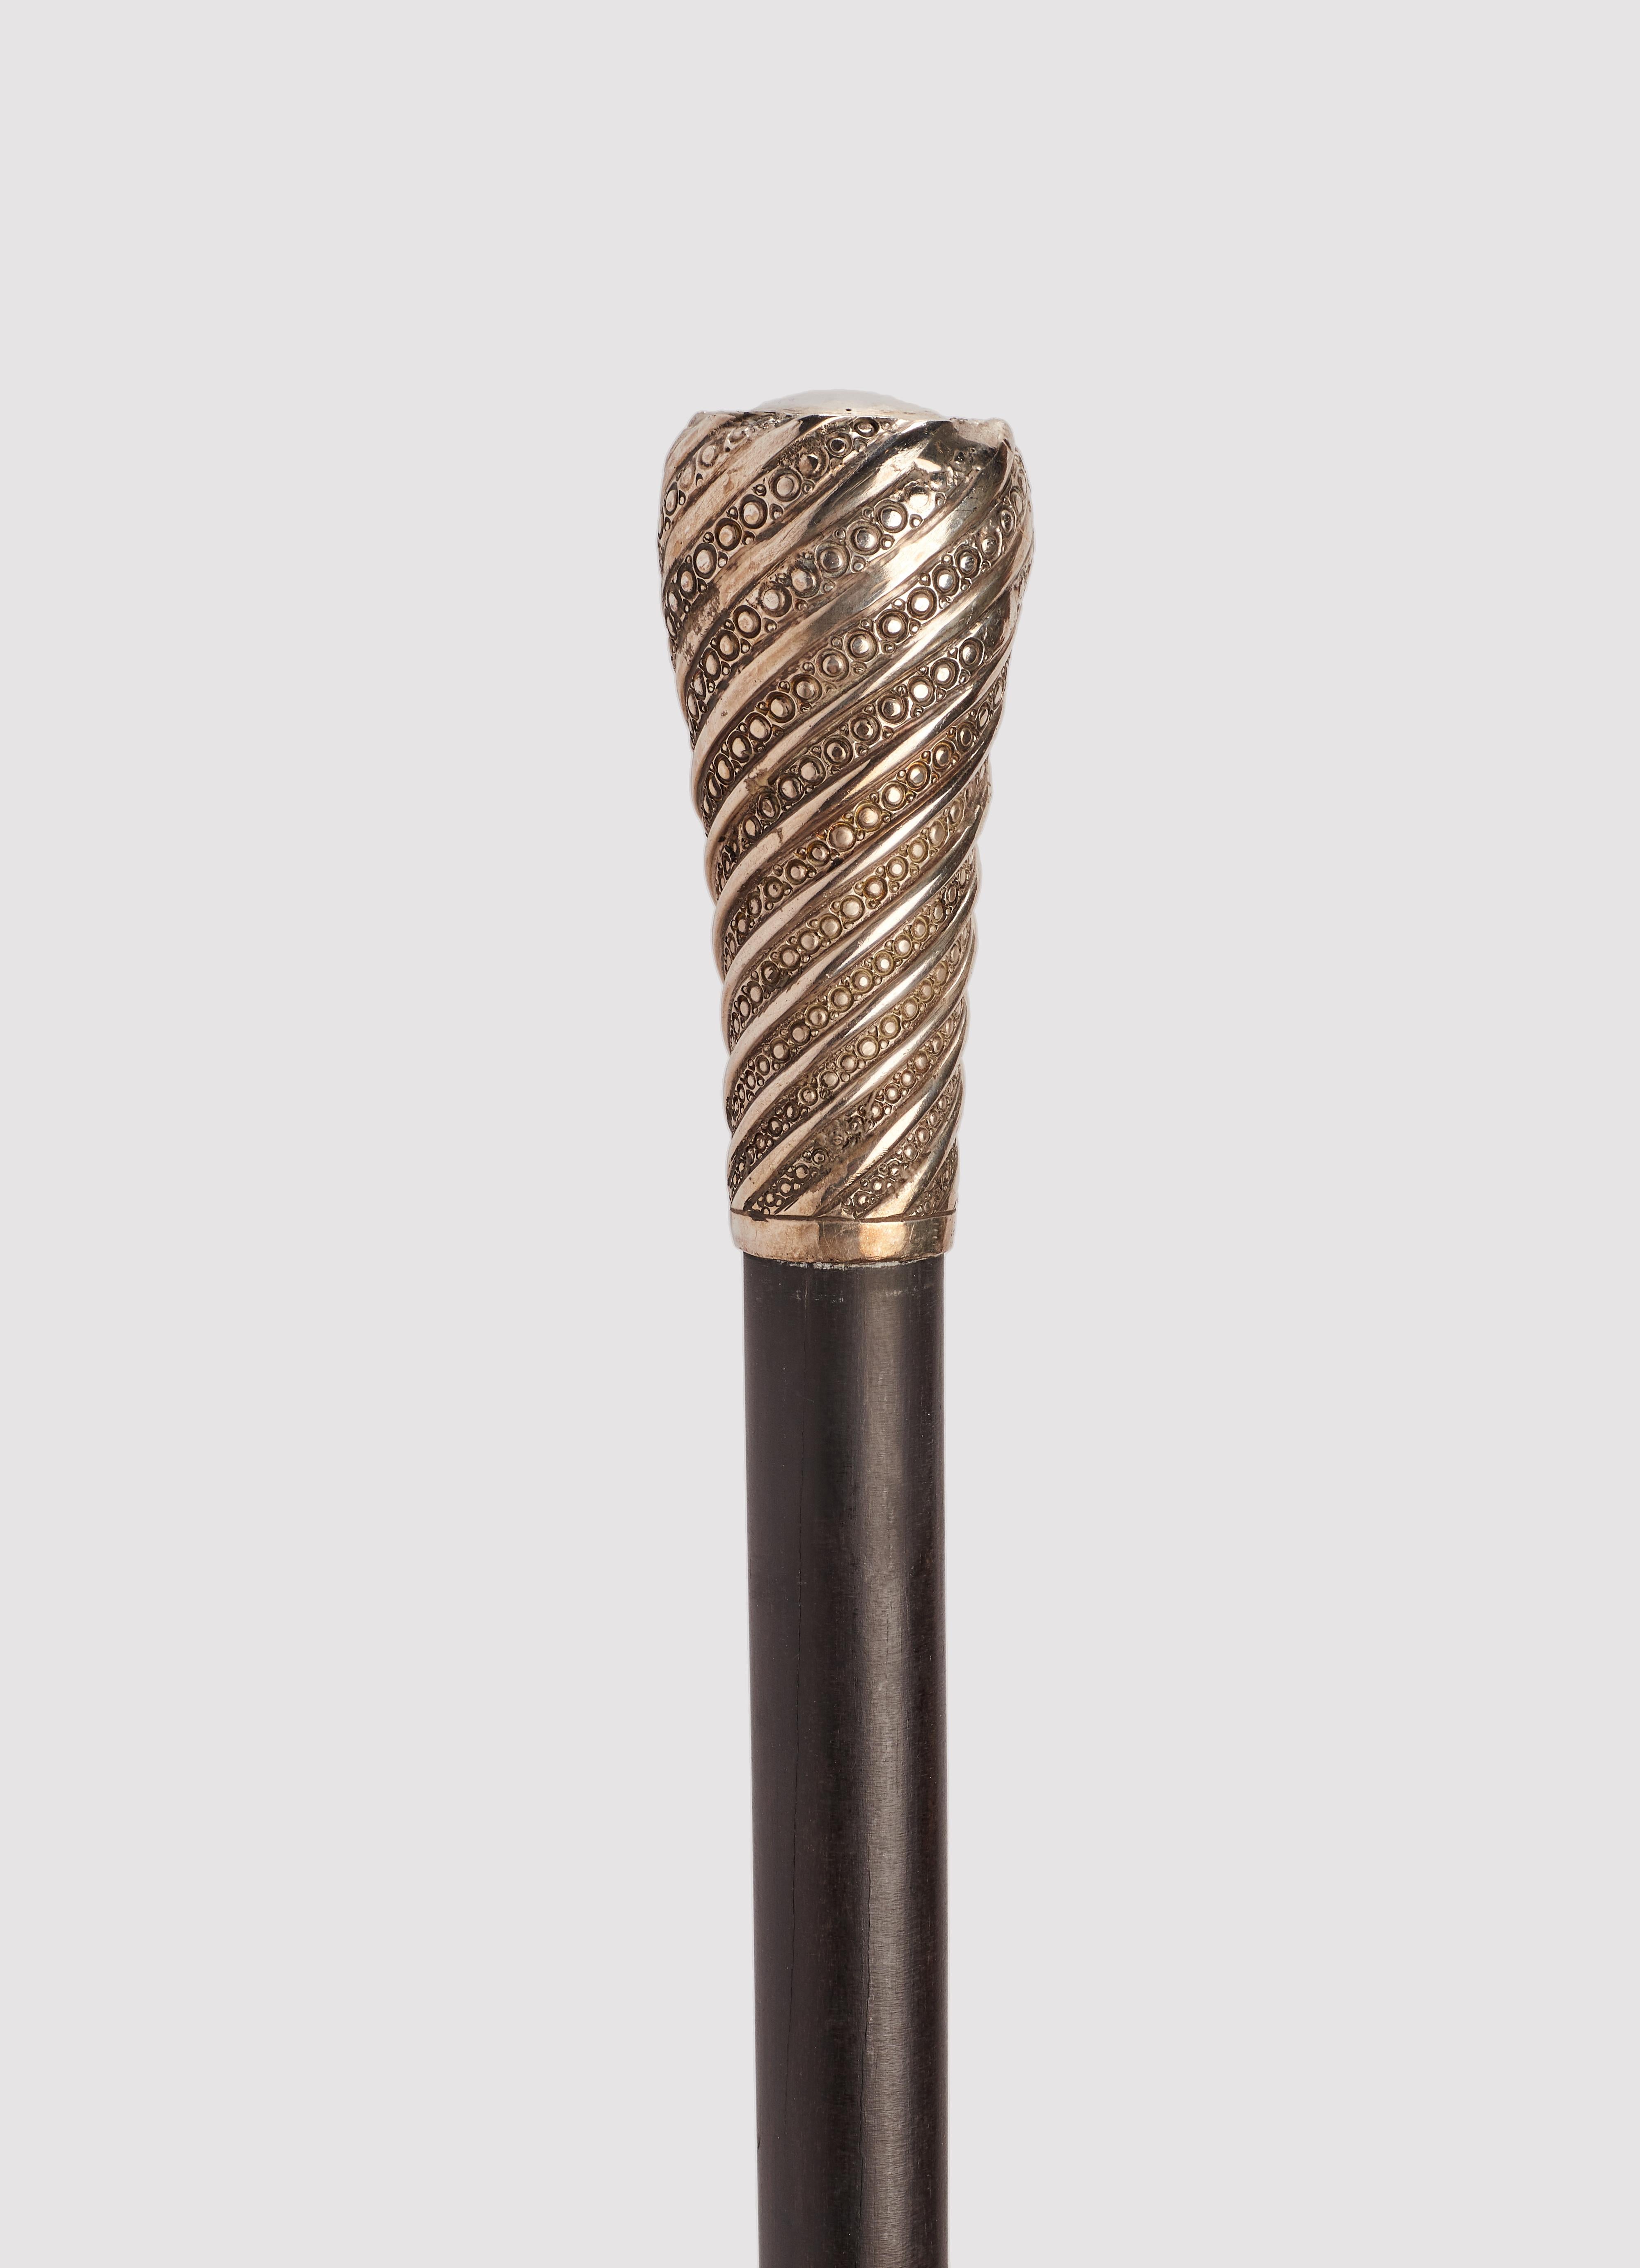 Walking stick: silver handle, milord shape tourchon. Eboney wood shaft. Metal ferrule. France 1900 ca.